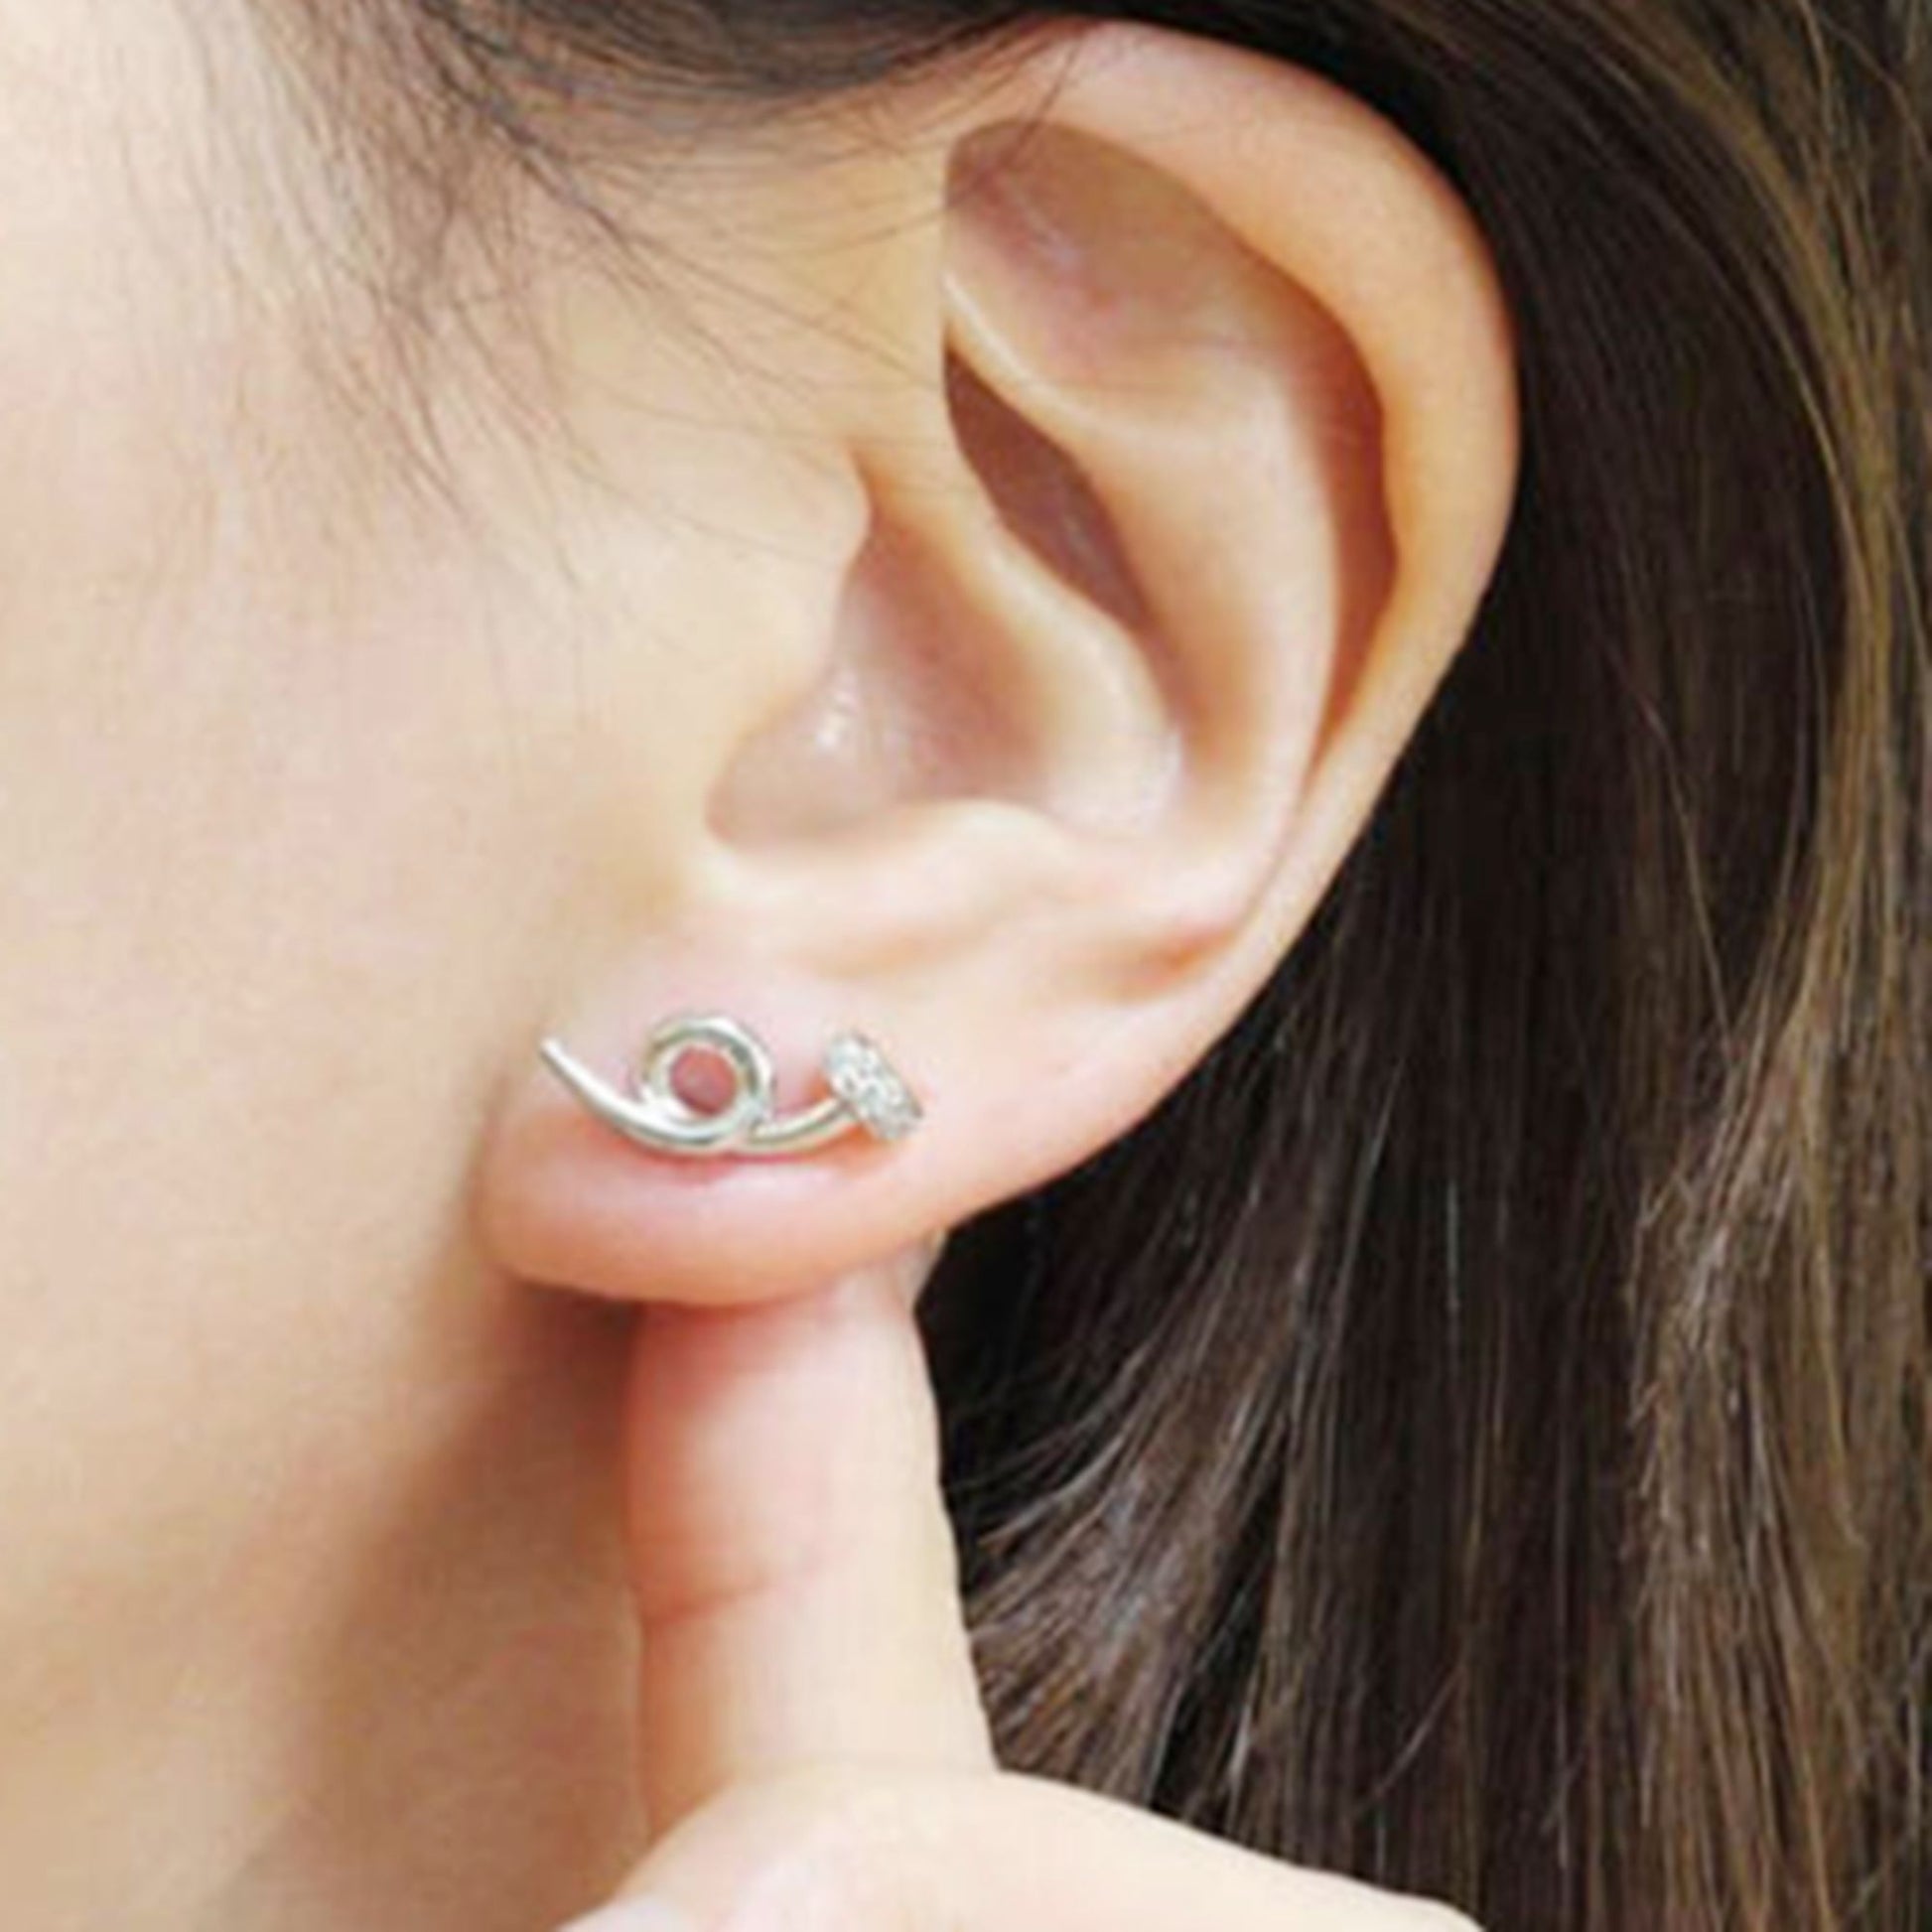 Sterling Silver Twisted Nail Spiral Pin CZ Stud Earrings - Minimalist Dainty Ear Piercing Jewelry - sugarkittenlondon